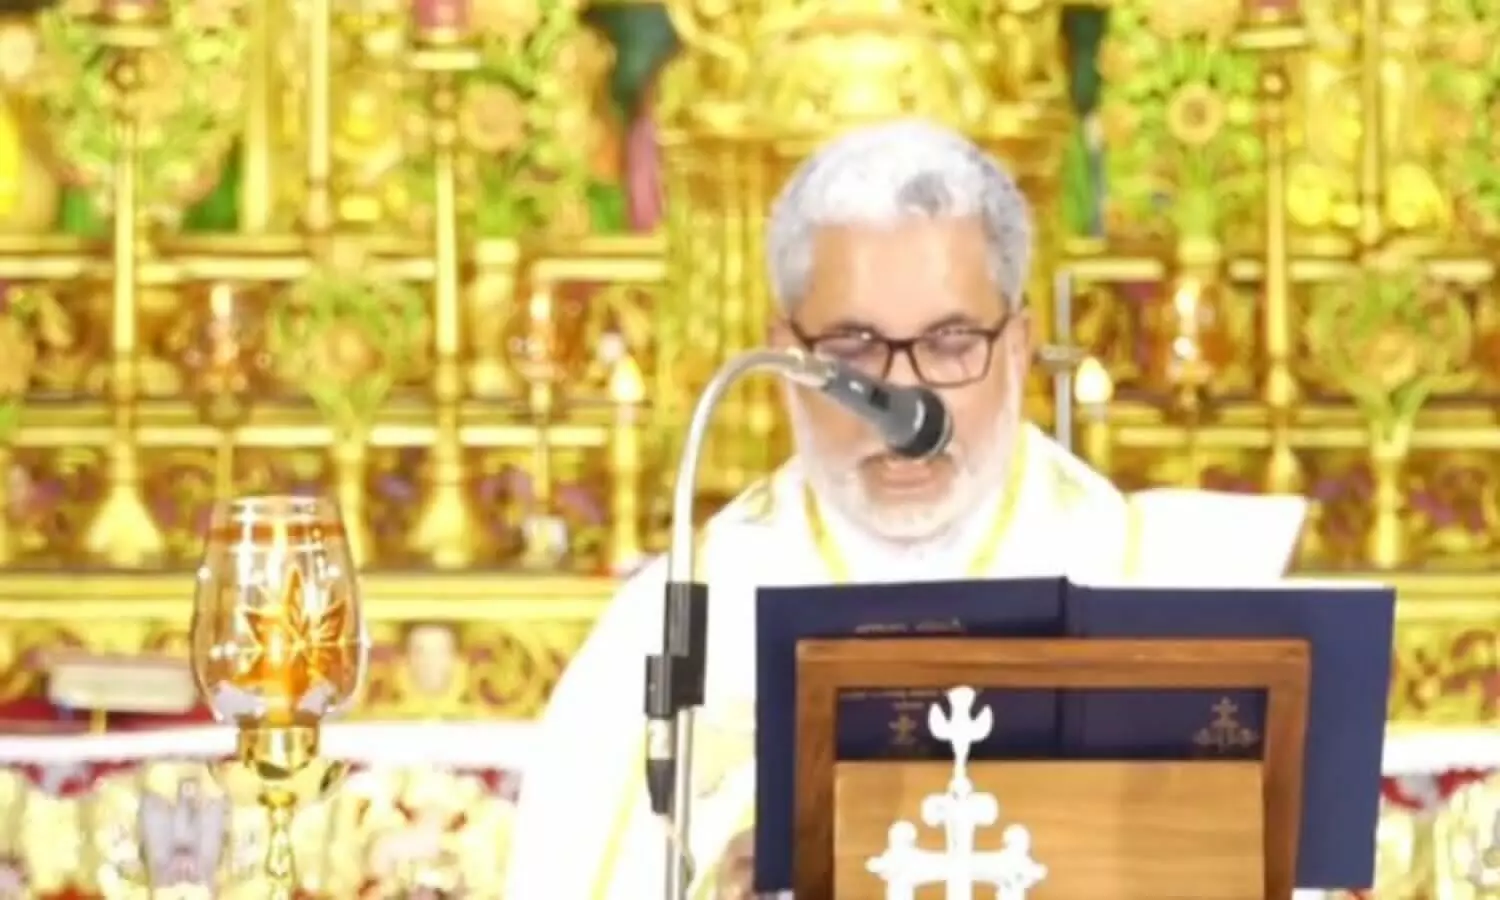 Kerala bishop controversial statement